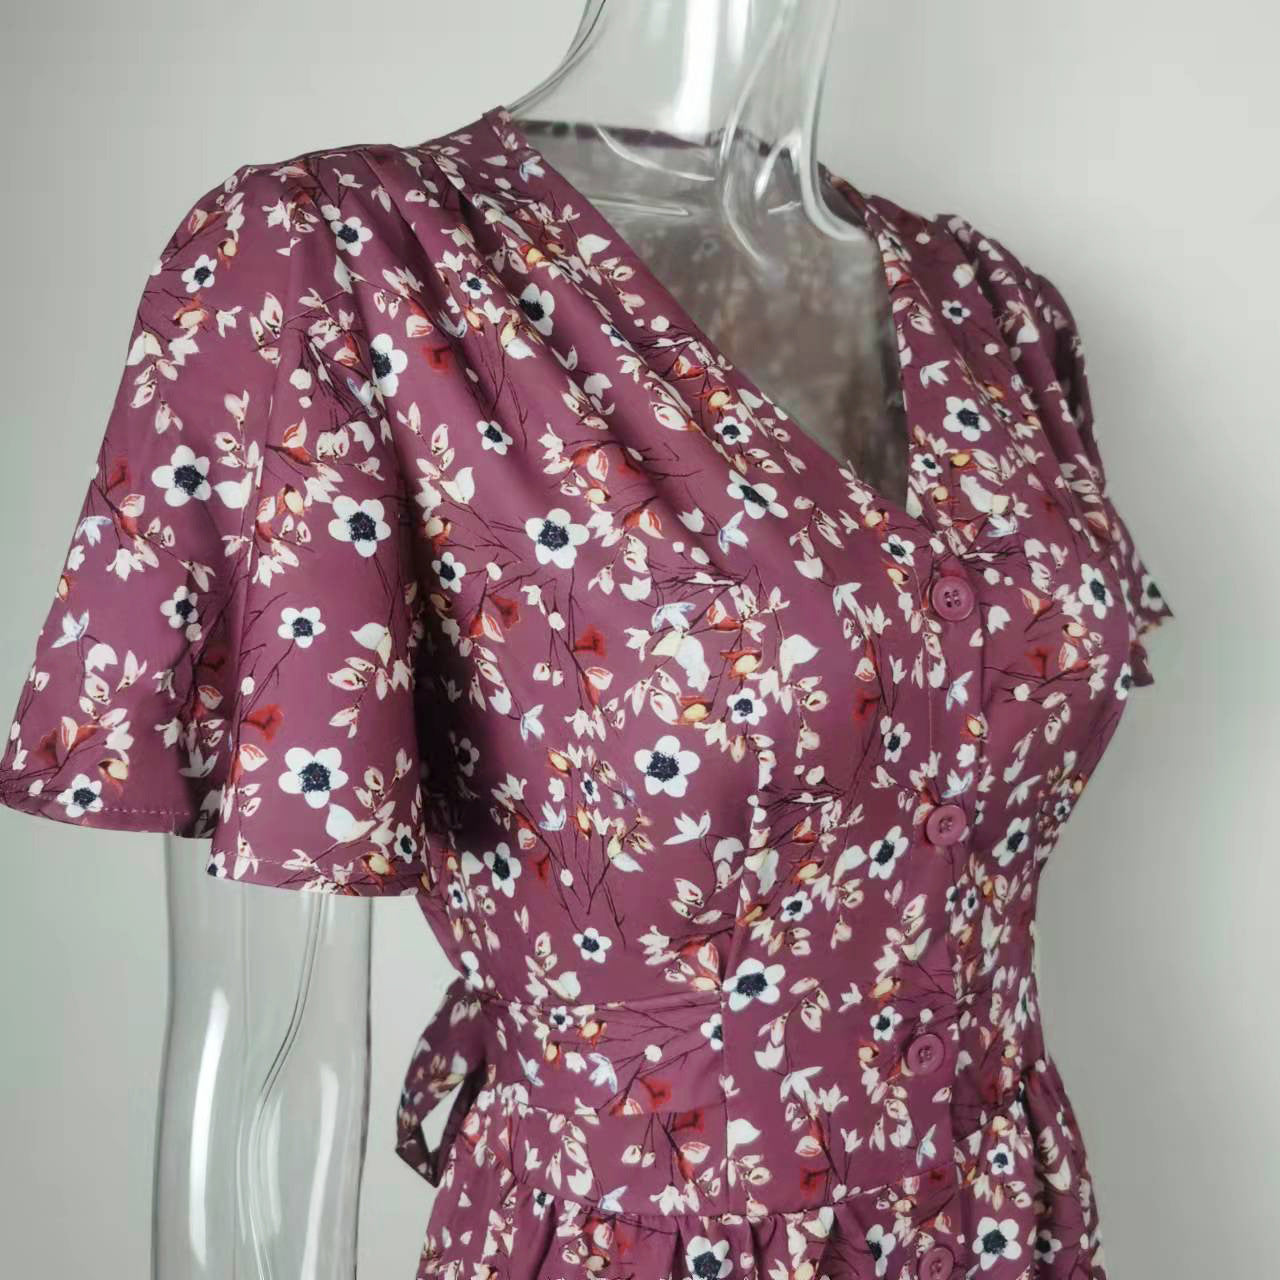 שמלה בעיצוב ססגוני דגם רותם